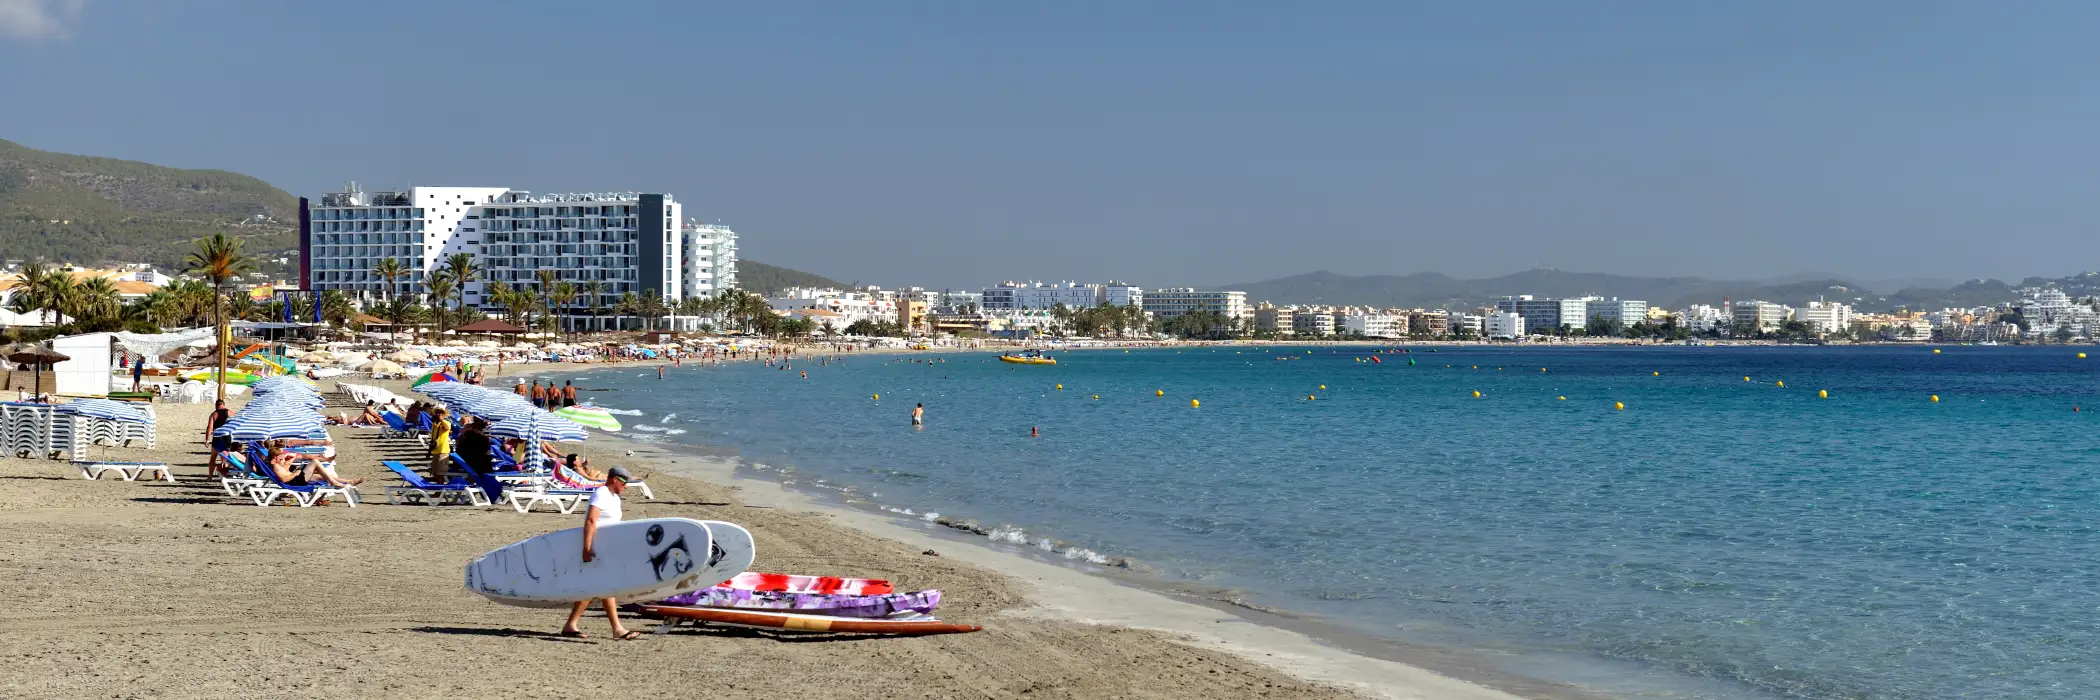 Playa d'en Bossa Holidays Ibiza